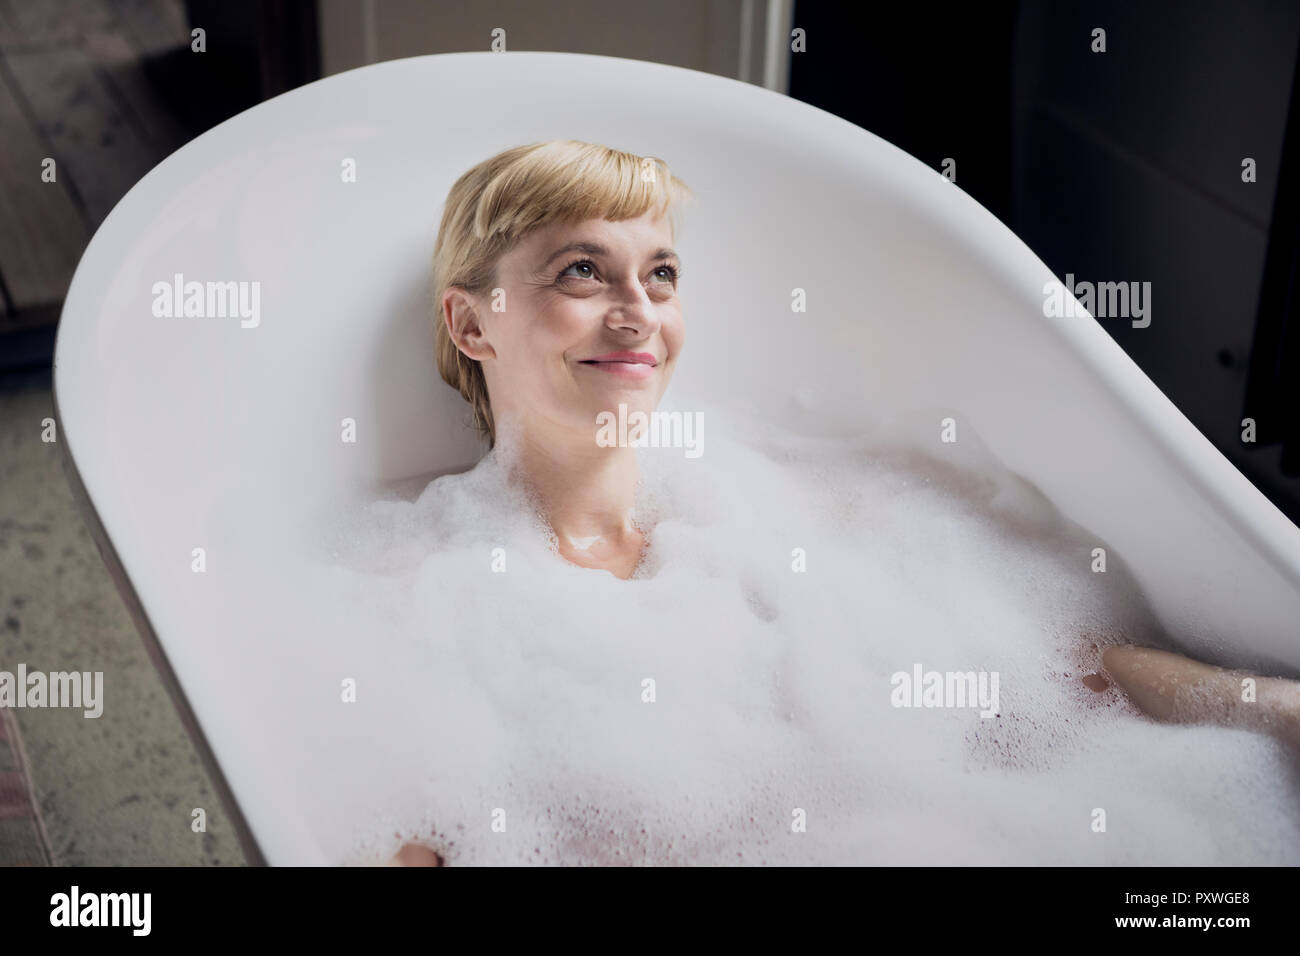 Ritratto di donna felice tenendo bubble bath Foto Stock